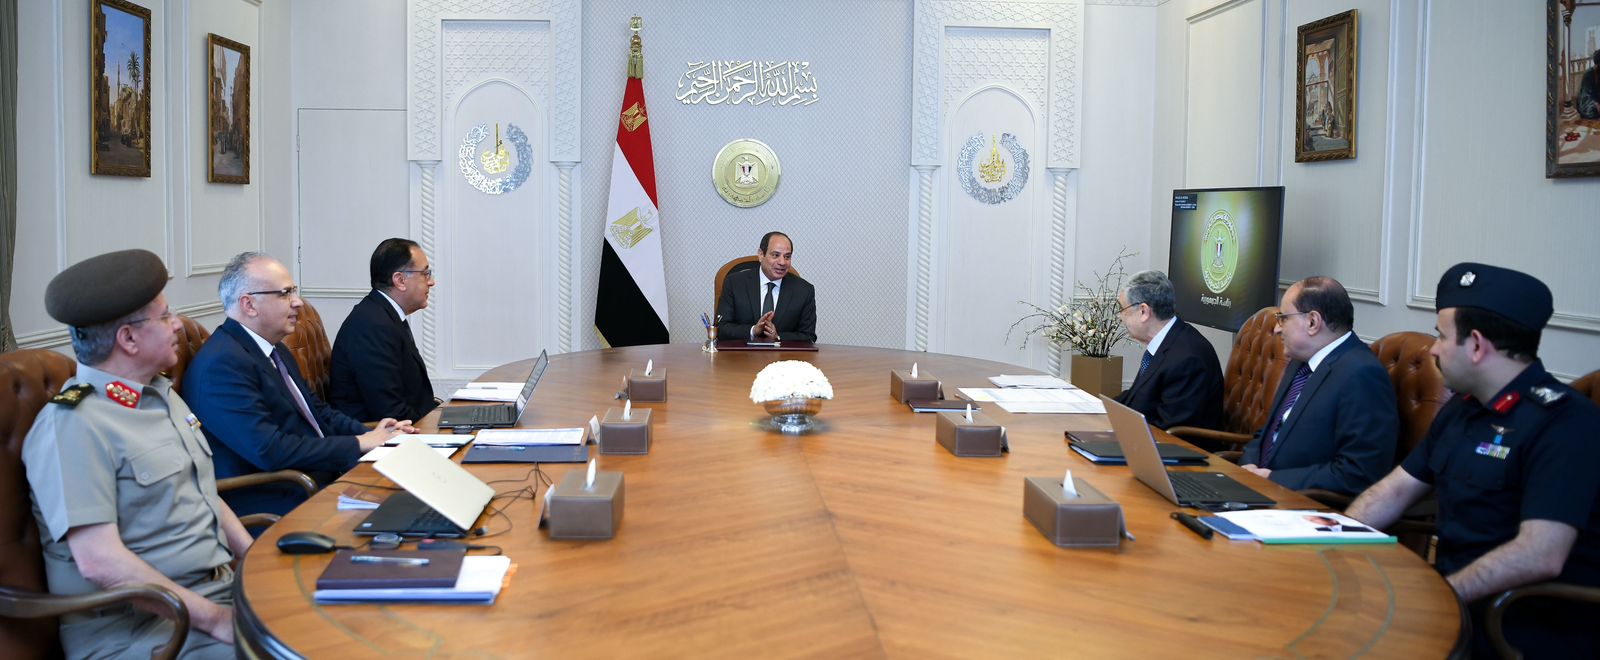 الرئيس السيسي يجتمع مع رئيس الحكومة وعدد من الوزراء لمتابعة توفير الاحتياجات اللازمة من المرافق والخدمات